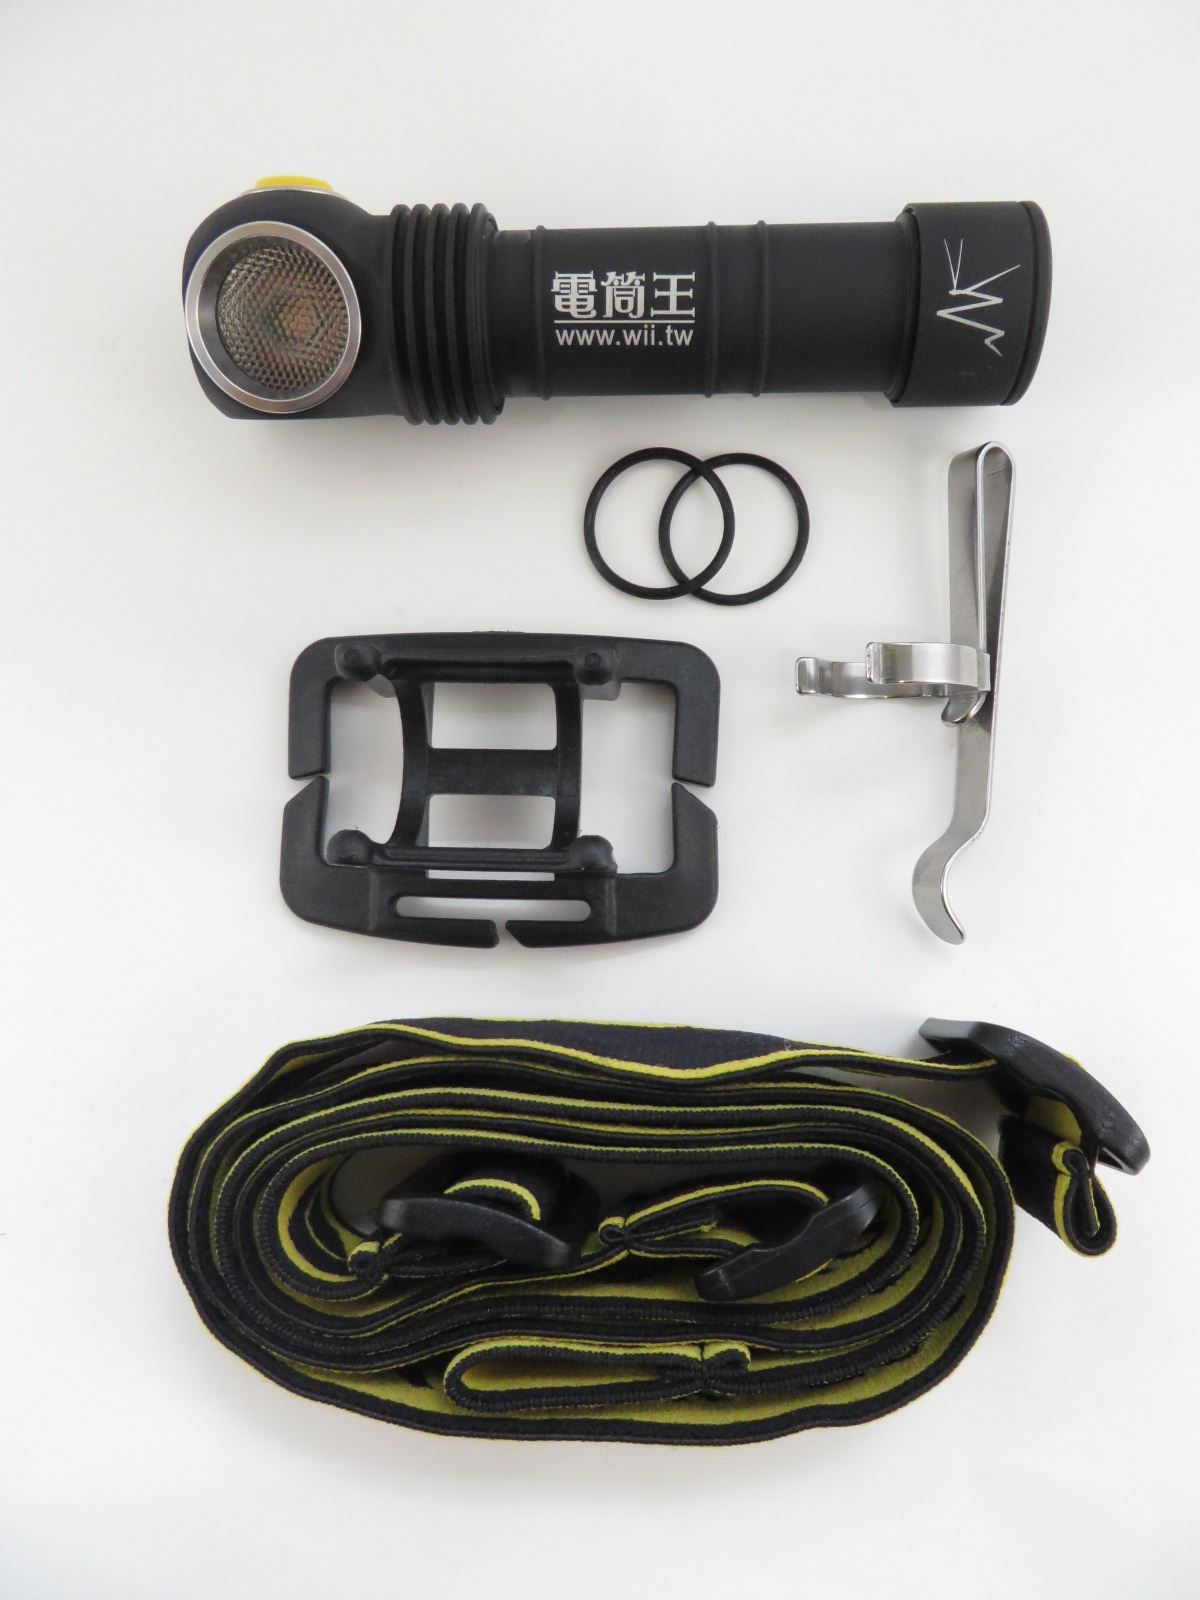 【停產】PSK 90cri - armytek wizard cri90 psk 電筒王限定版  3000K 高顯色攝影專用 套裝組(含電池及工程帽夾具)